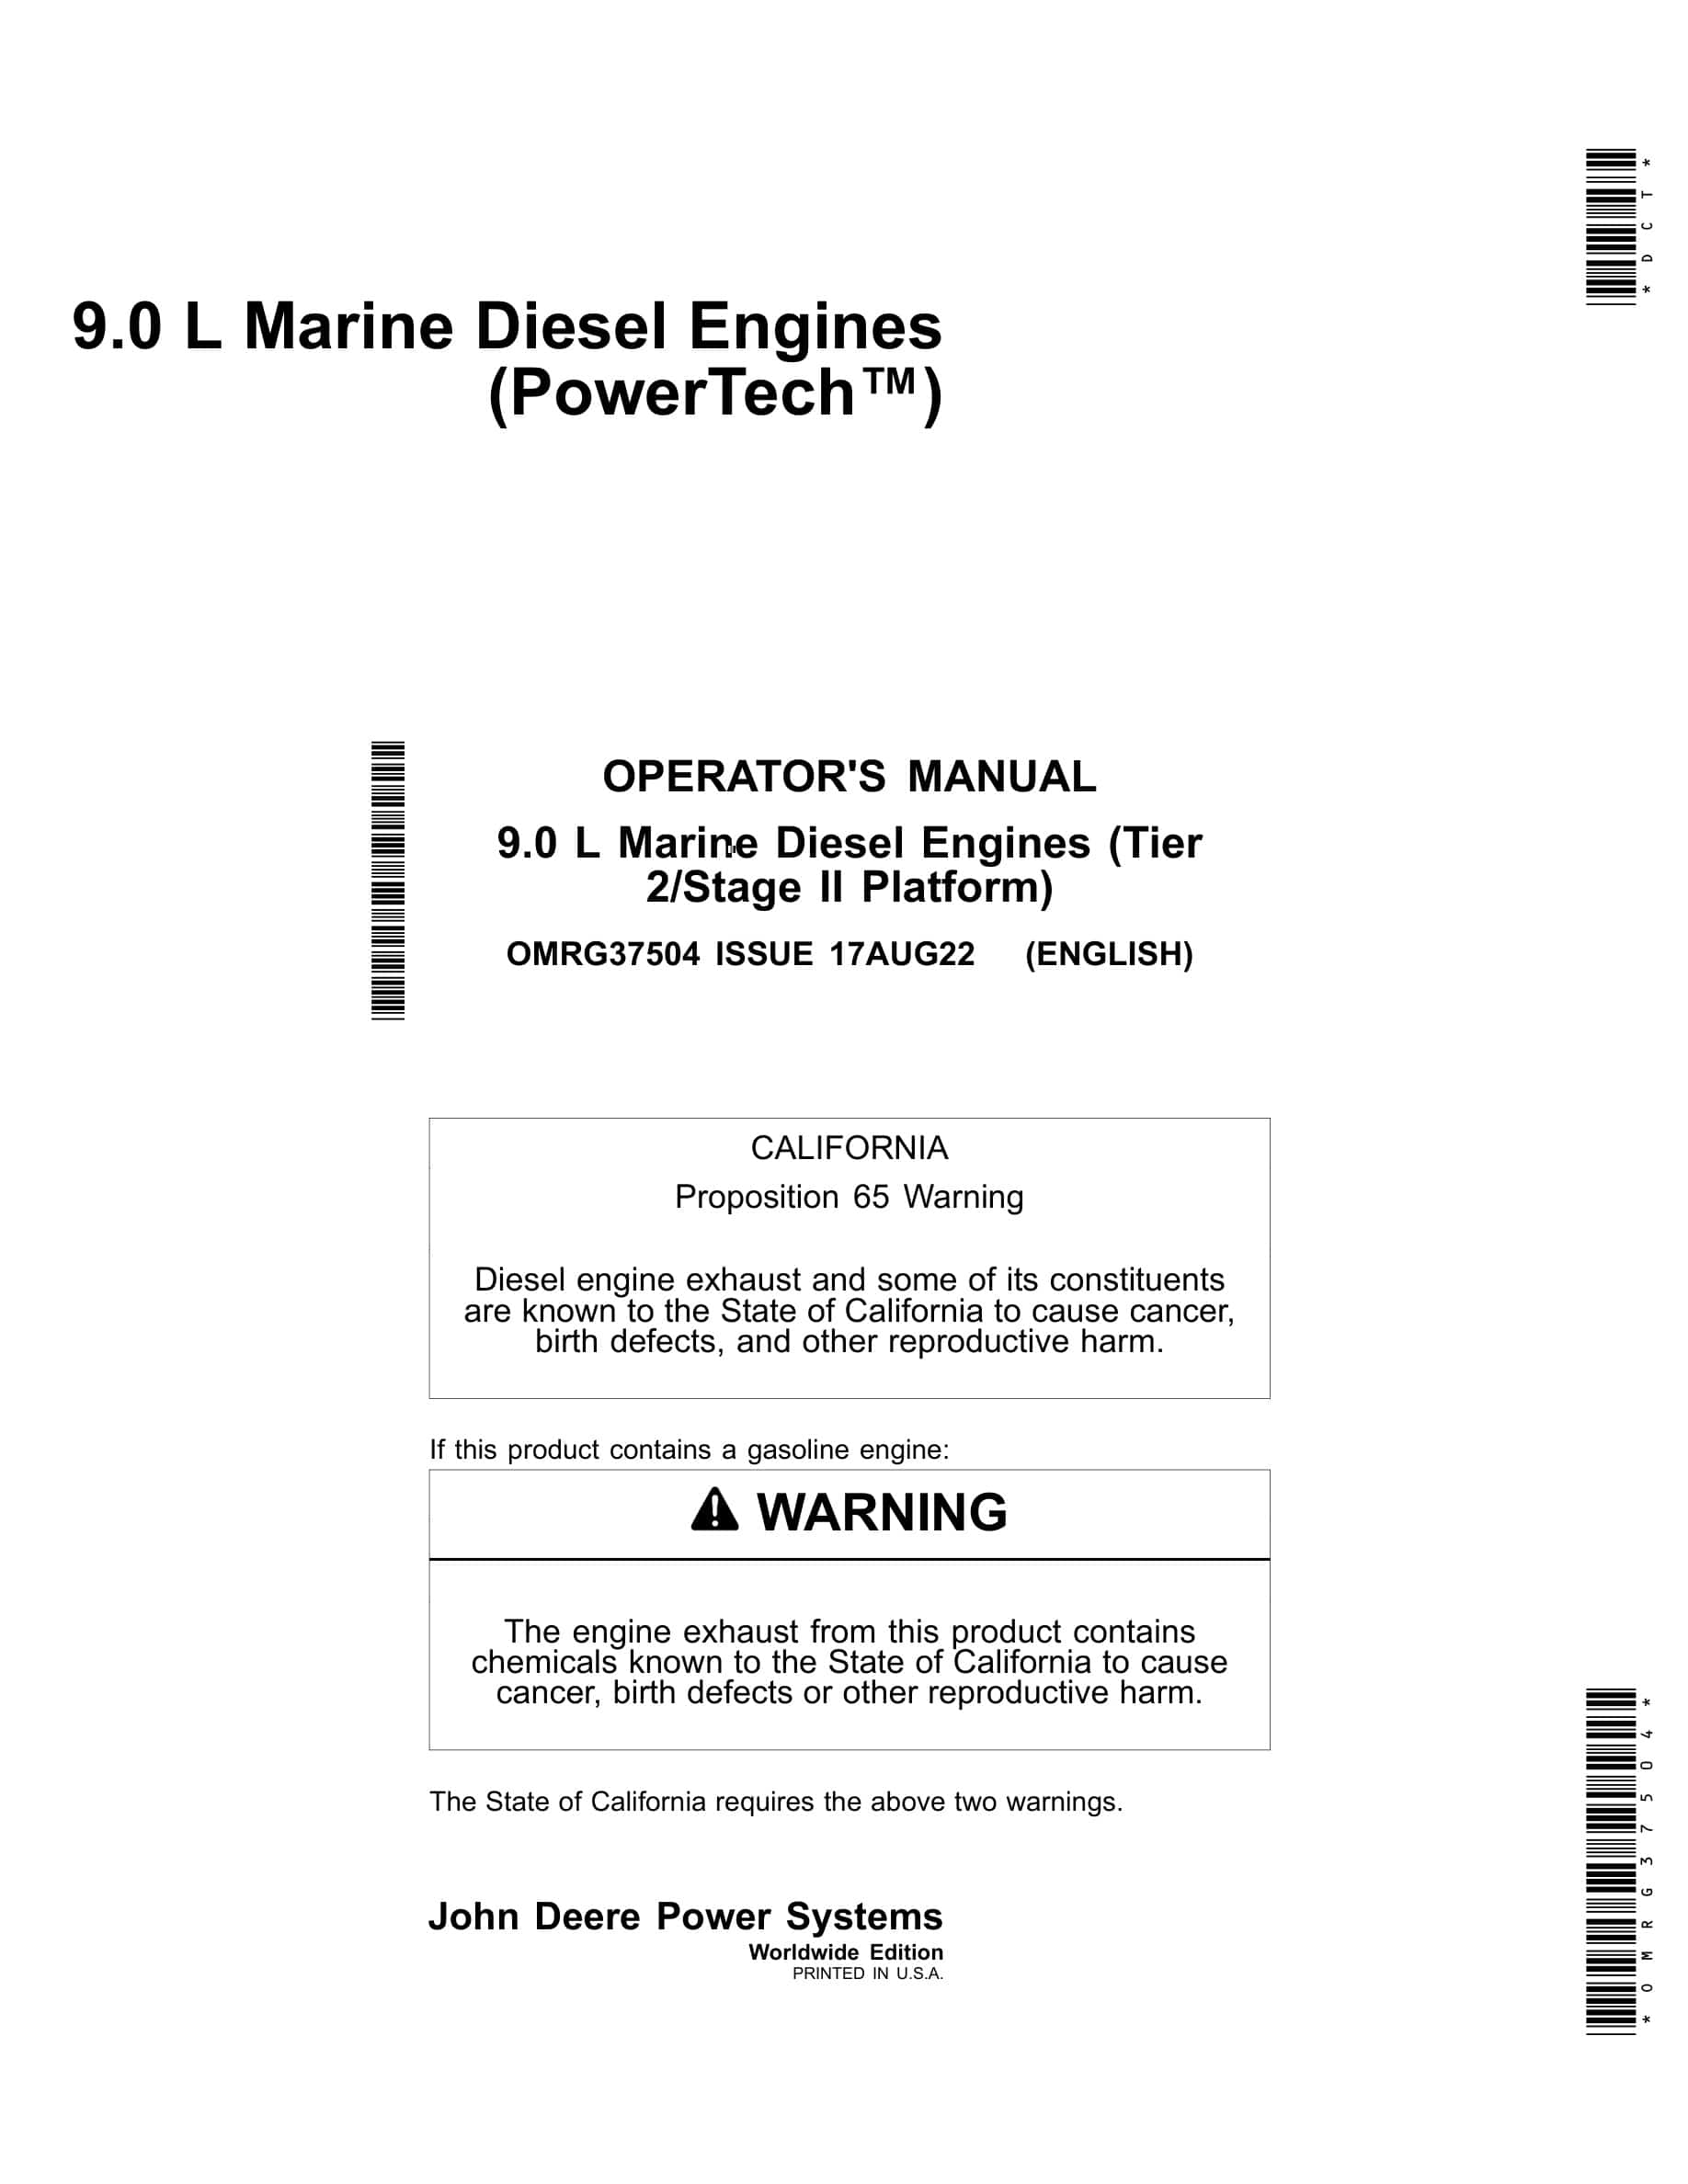 John Deere PowerTech 9.0 L (Tier 2 Stage II Platform) Marine Diesel Engines Operator Manual OMRG37504-1